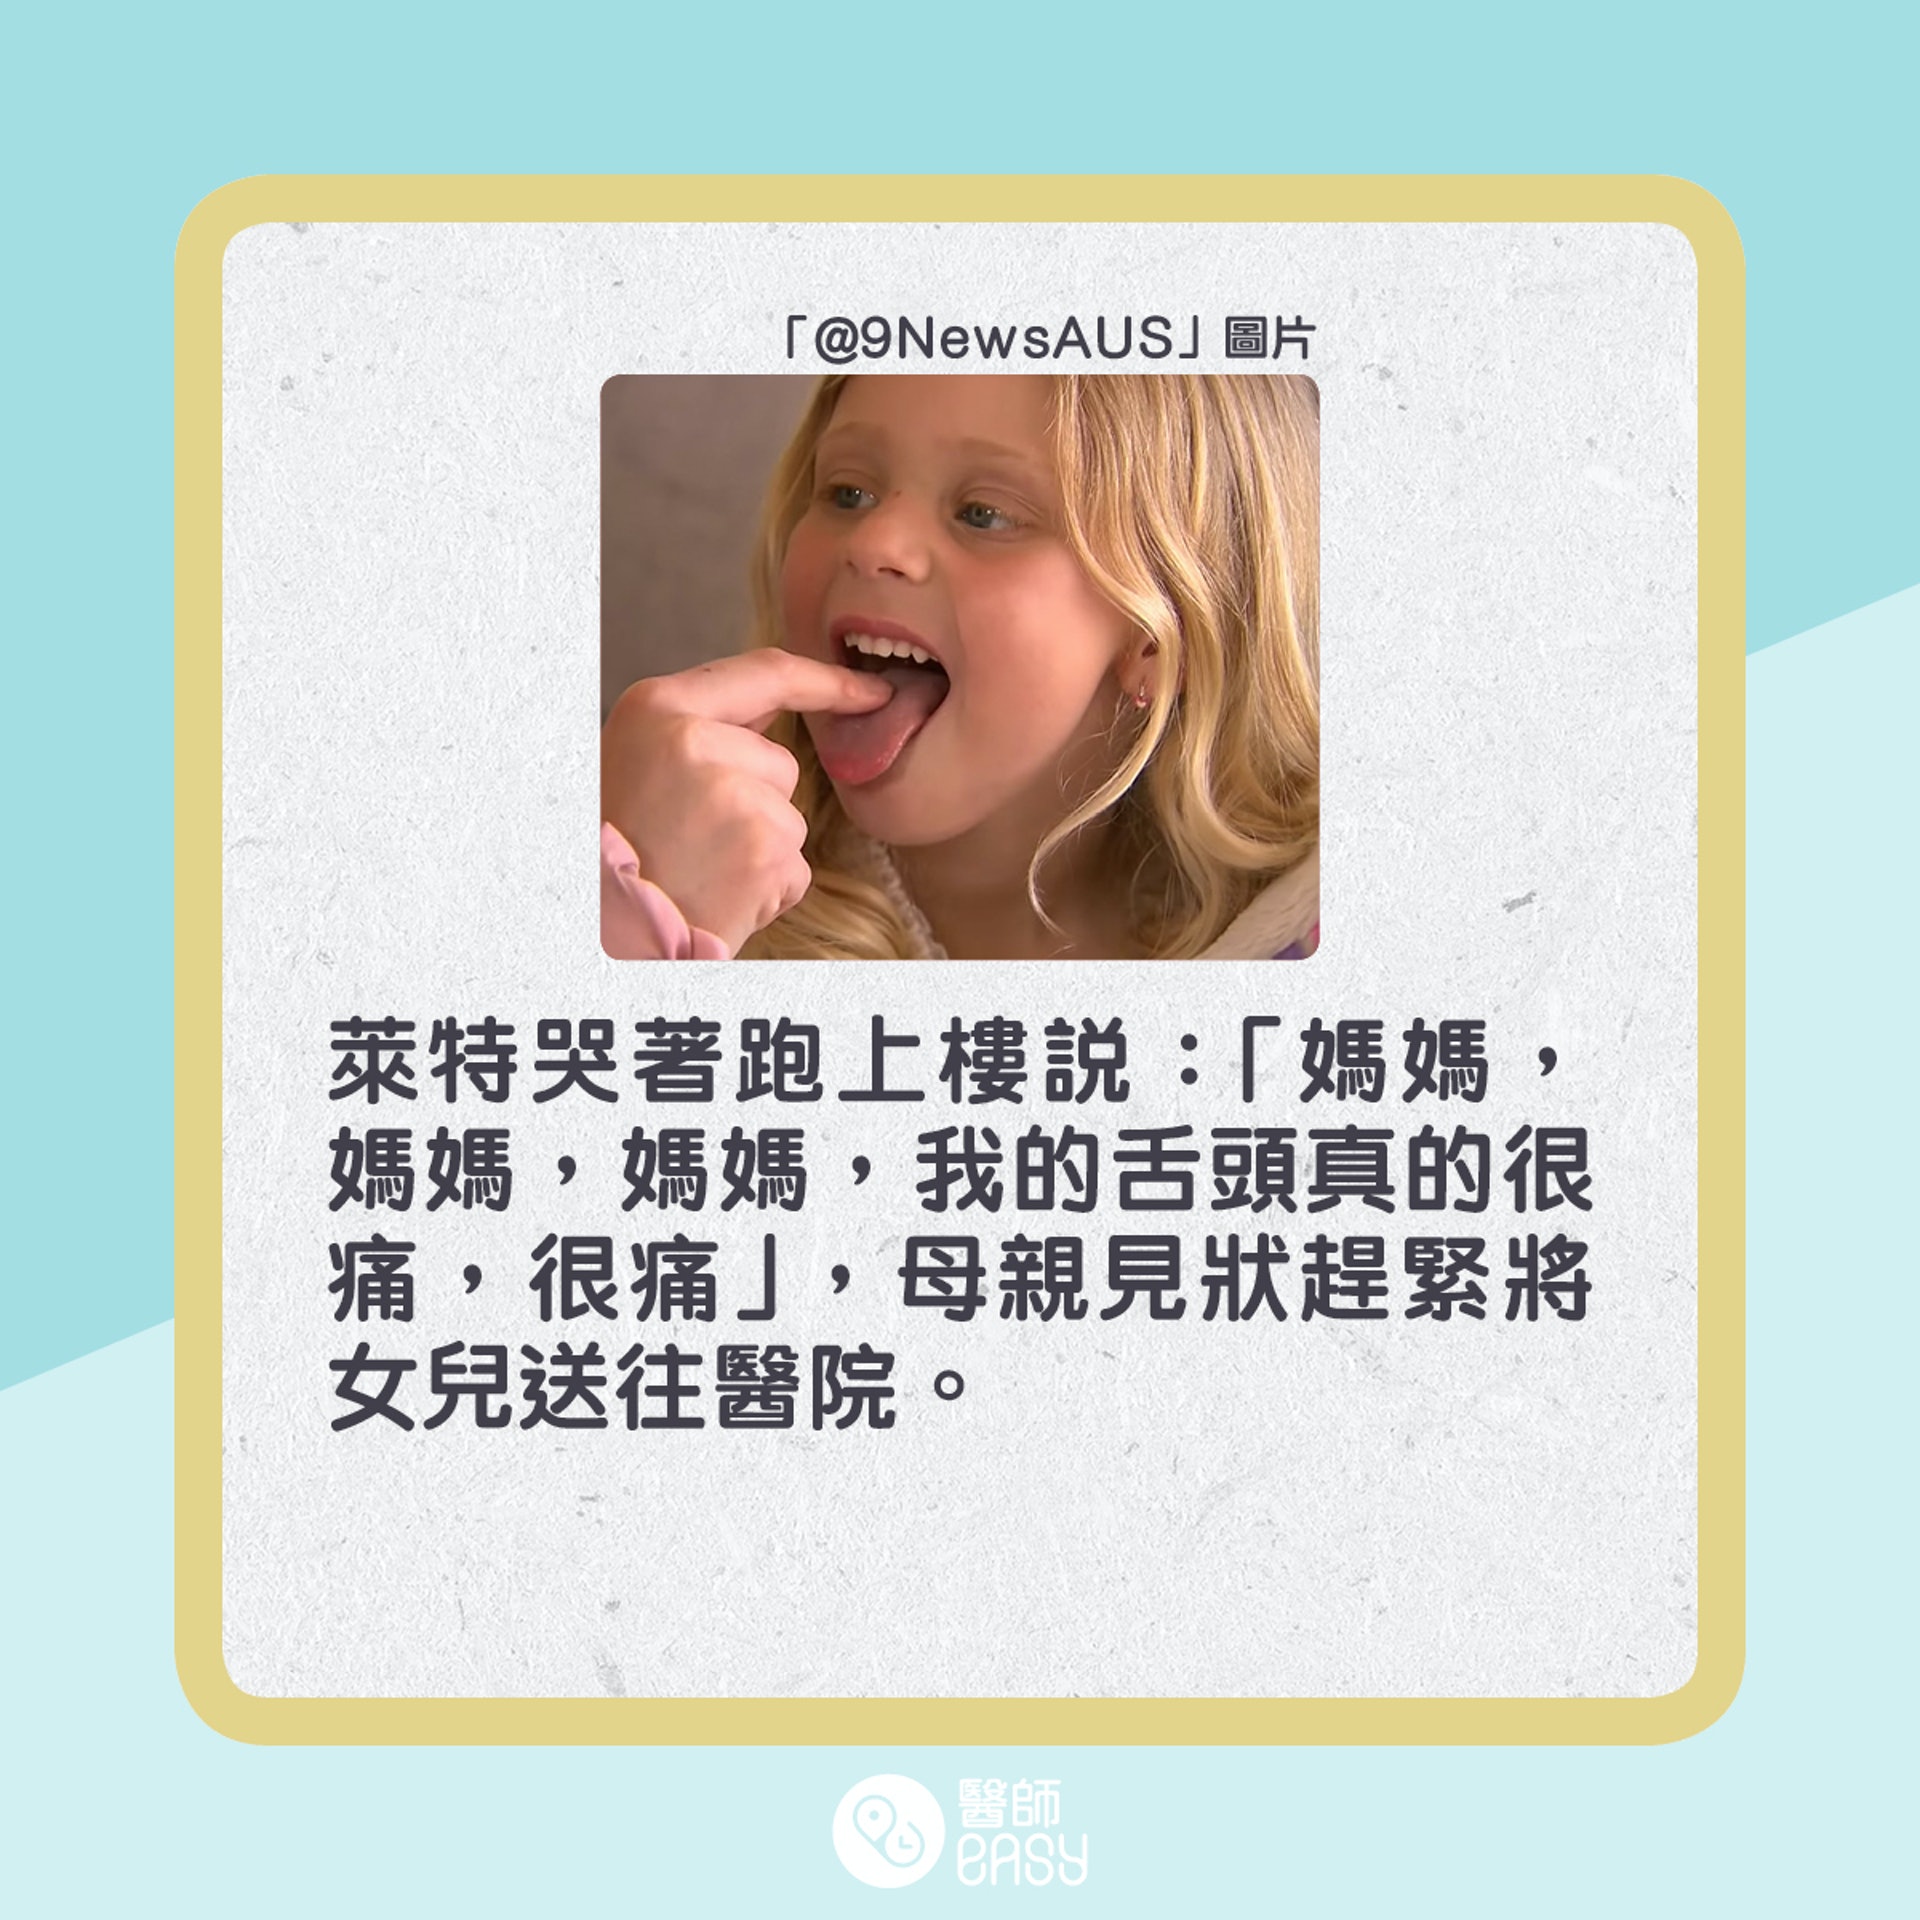 澳洲4歲女童萊德因為吃酸糖而嚴重灼傷舌頭。(01製圖)